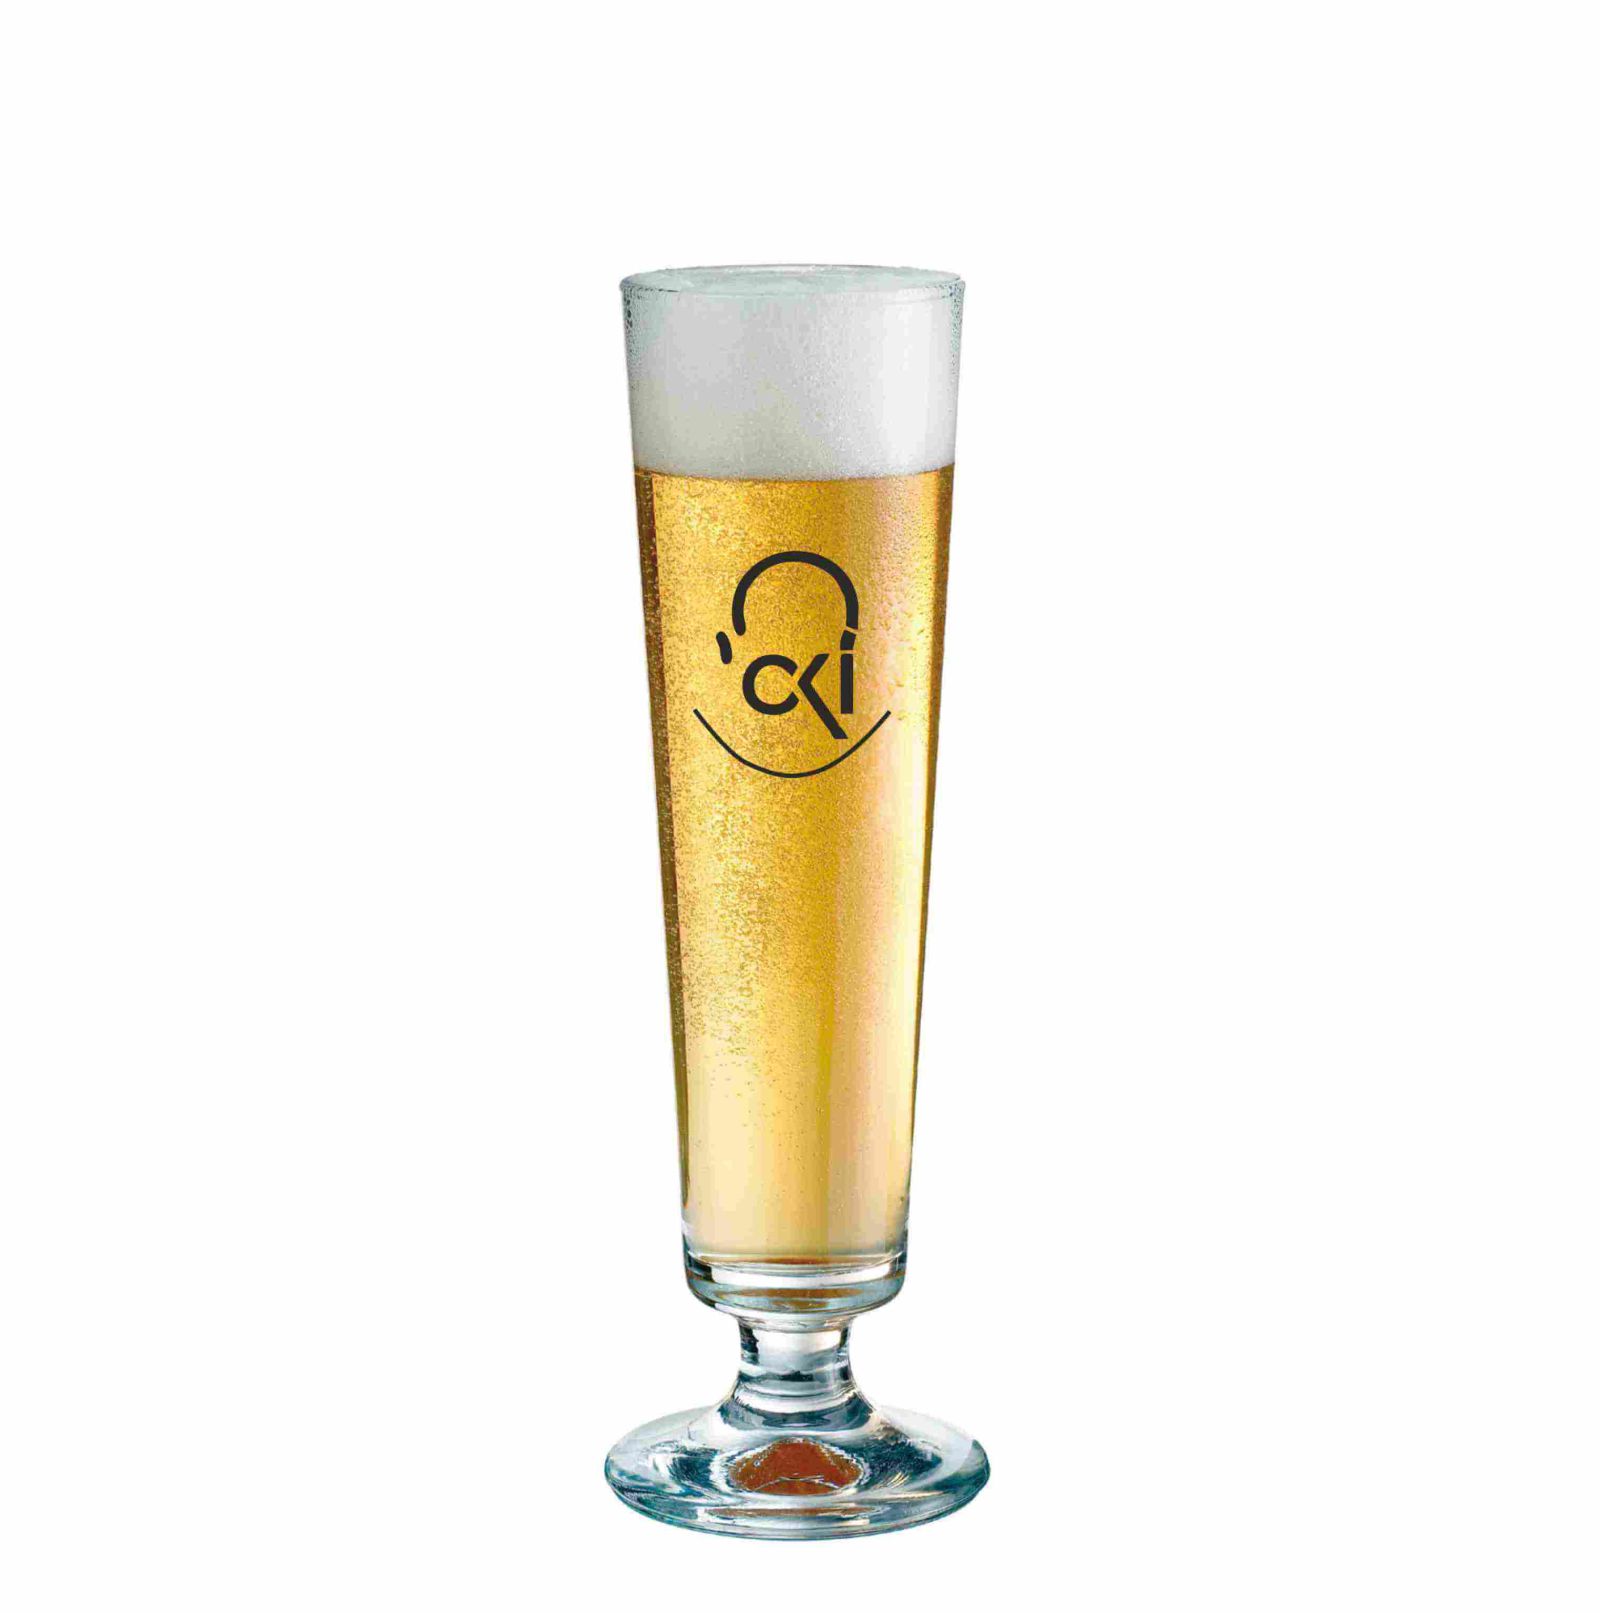 Munster Bier Tulpe 25 cl voor een bedrukking of gravure met bier en een mooie schuimkraag